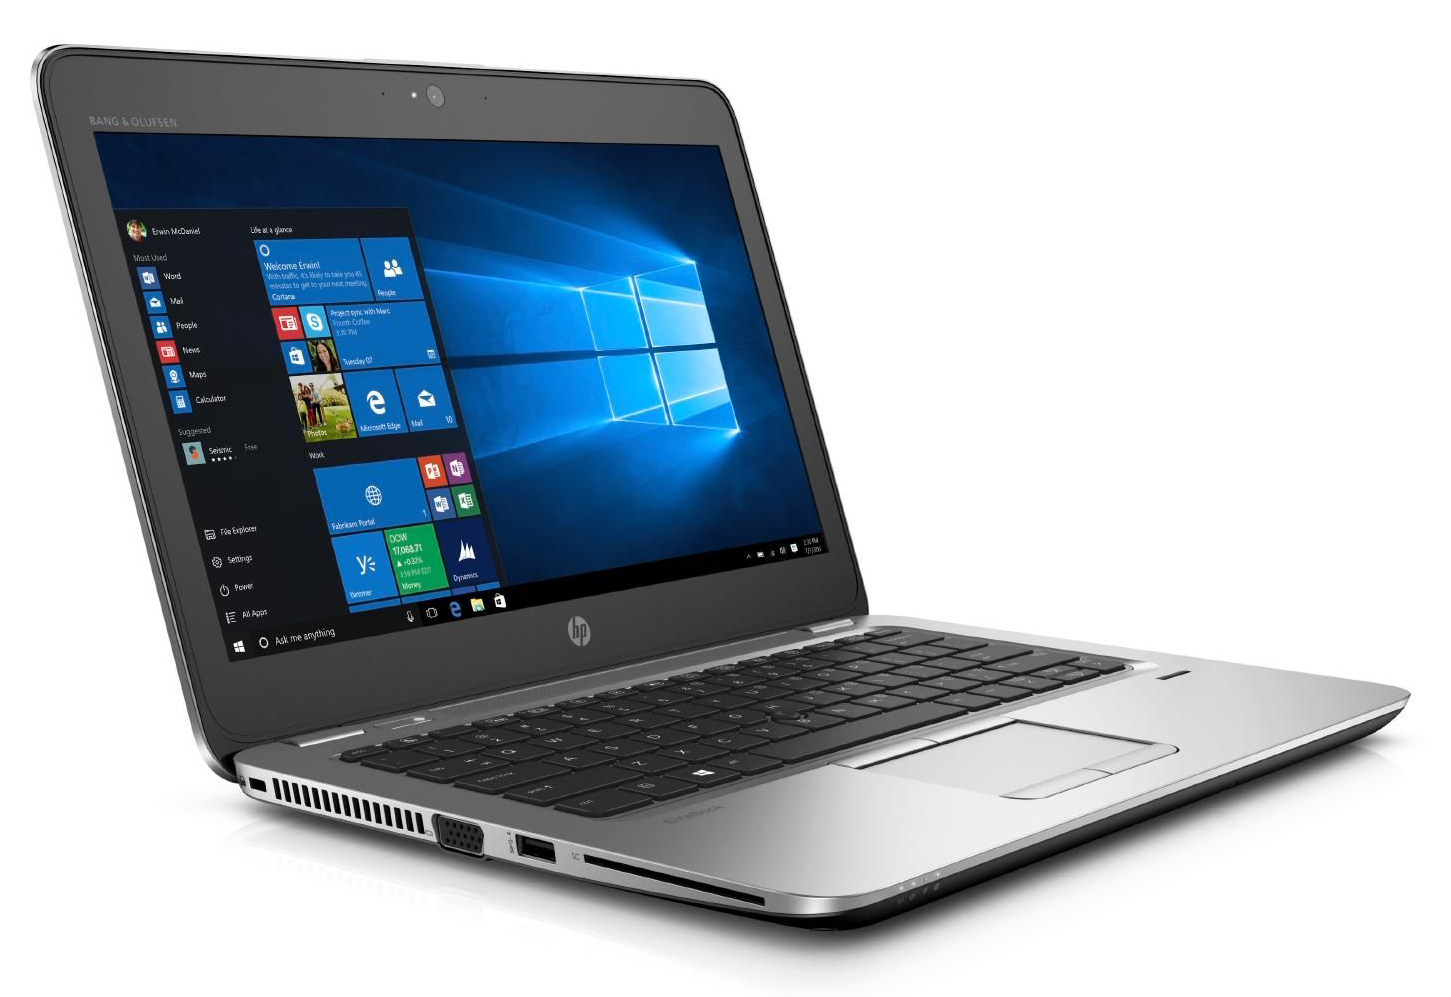 HP EliteBook 820 G4 Intel i5 7300U 2.60GHz 8GB RAM 256GB SSD 12.5" Win 10